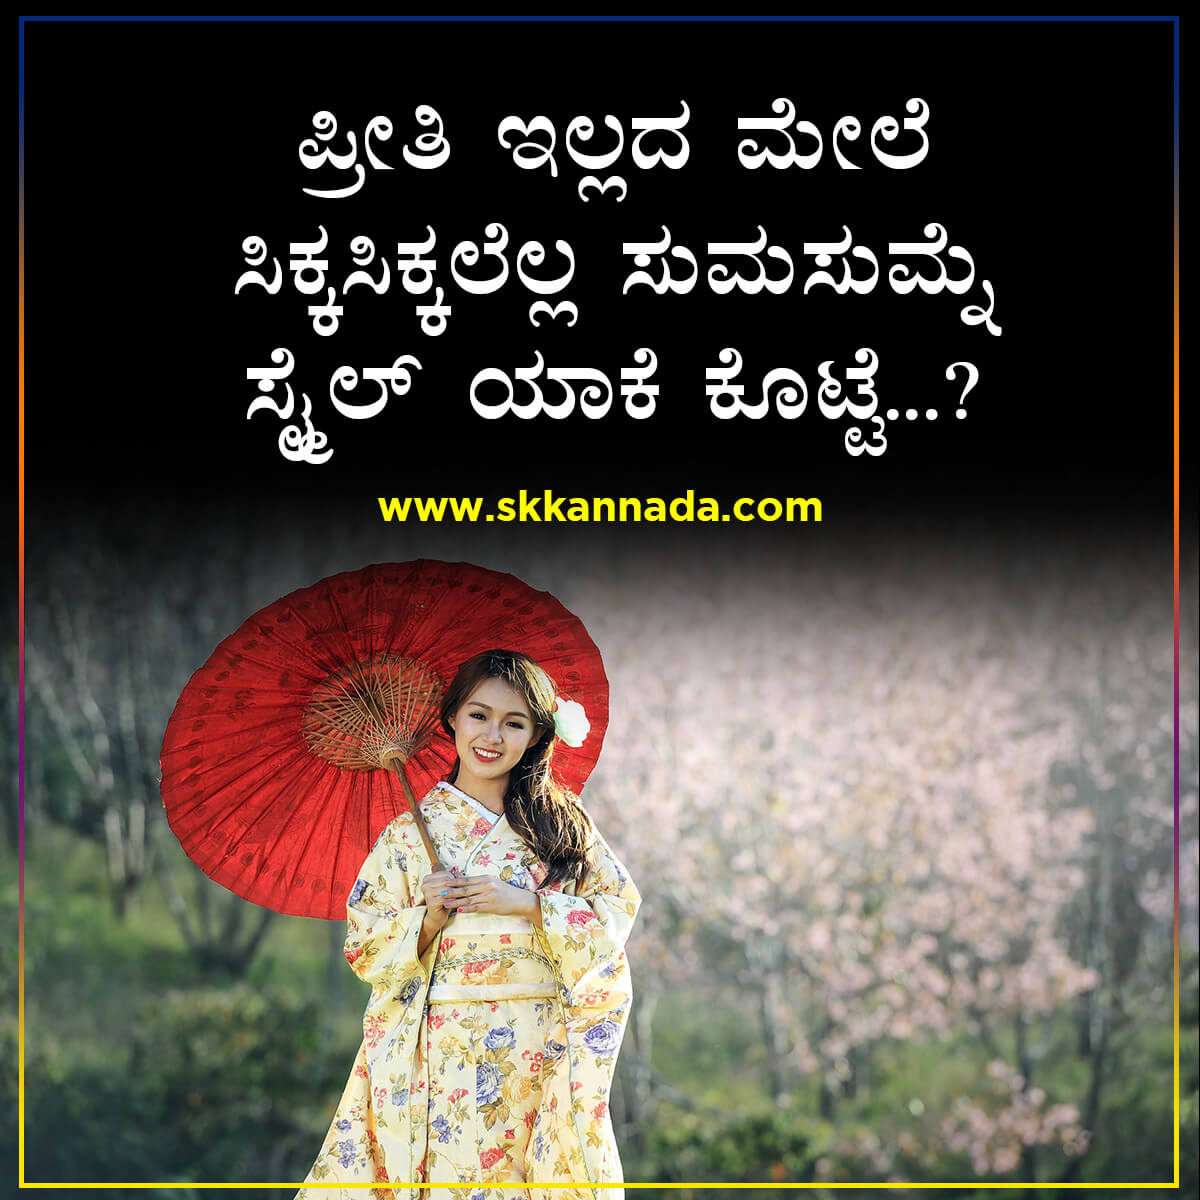 ಪ್ರೀತಿ ಇಲ್ಲದ ಮೇಲೆ - Kannada Sad Love Poem - Sad ...